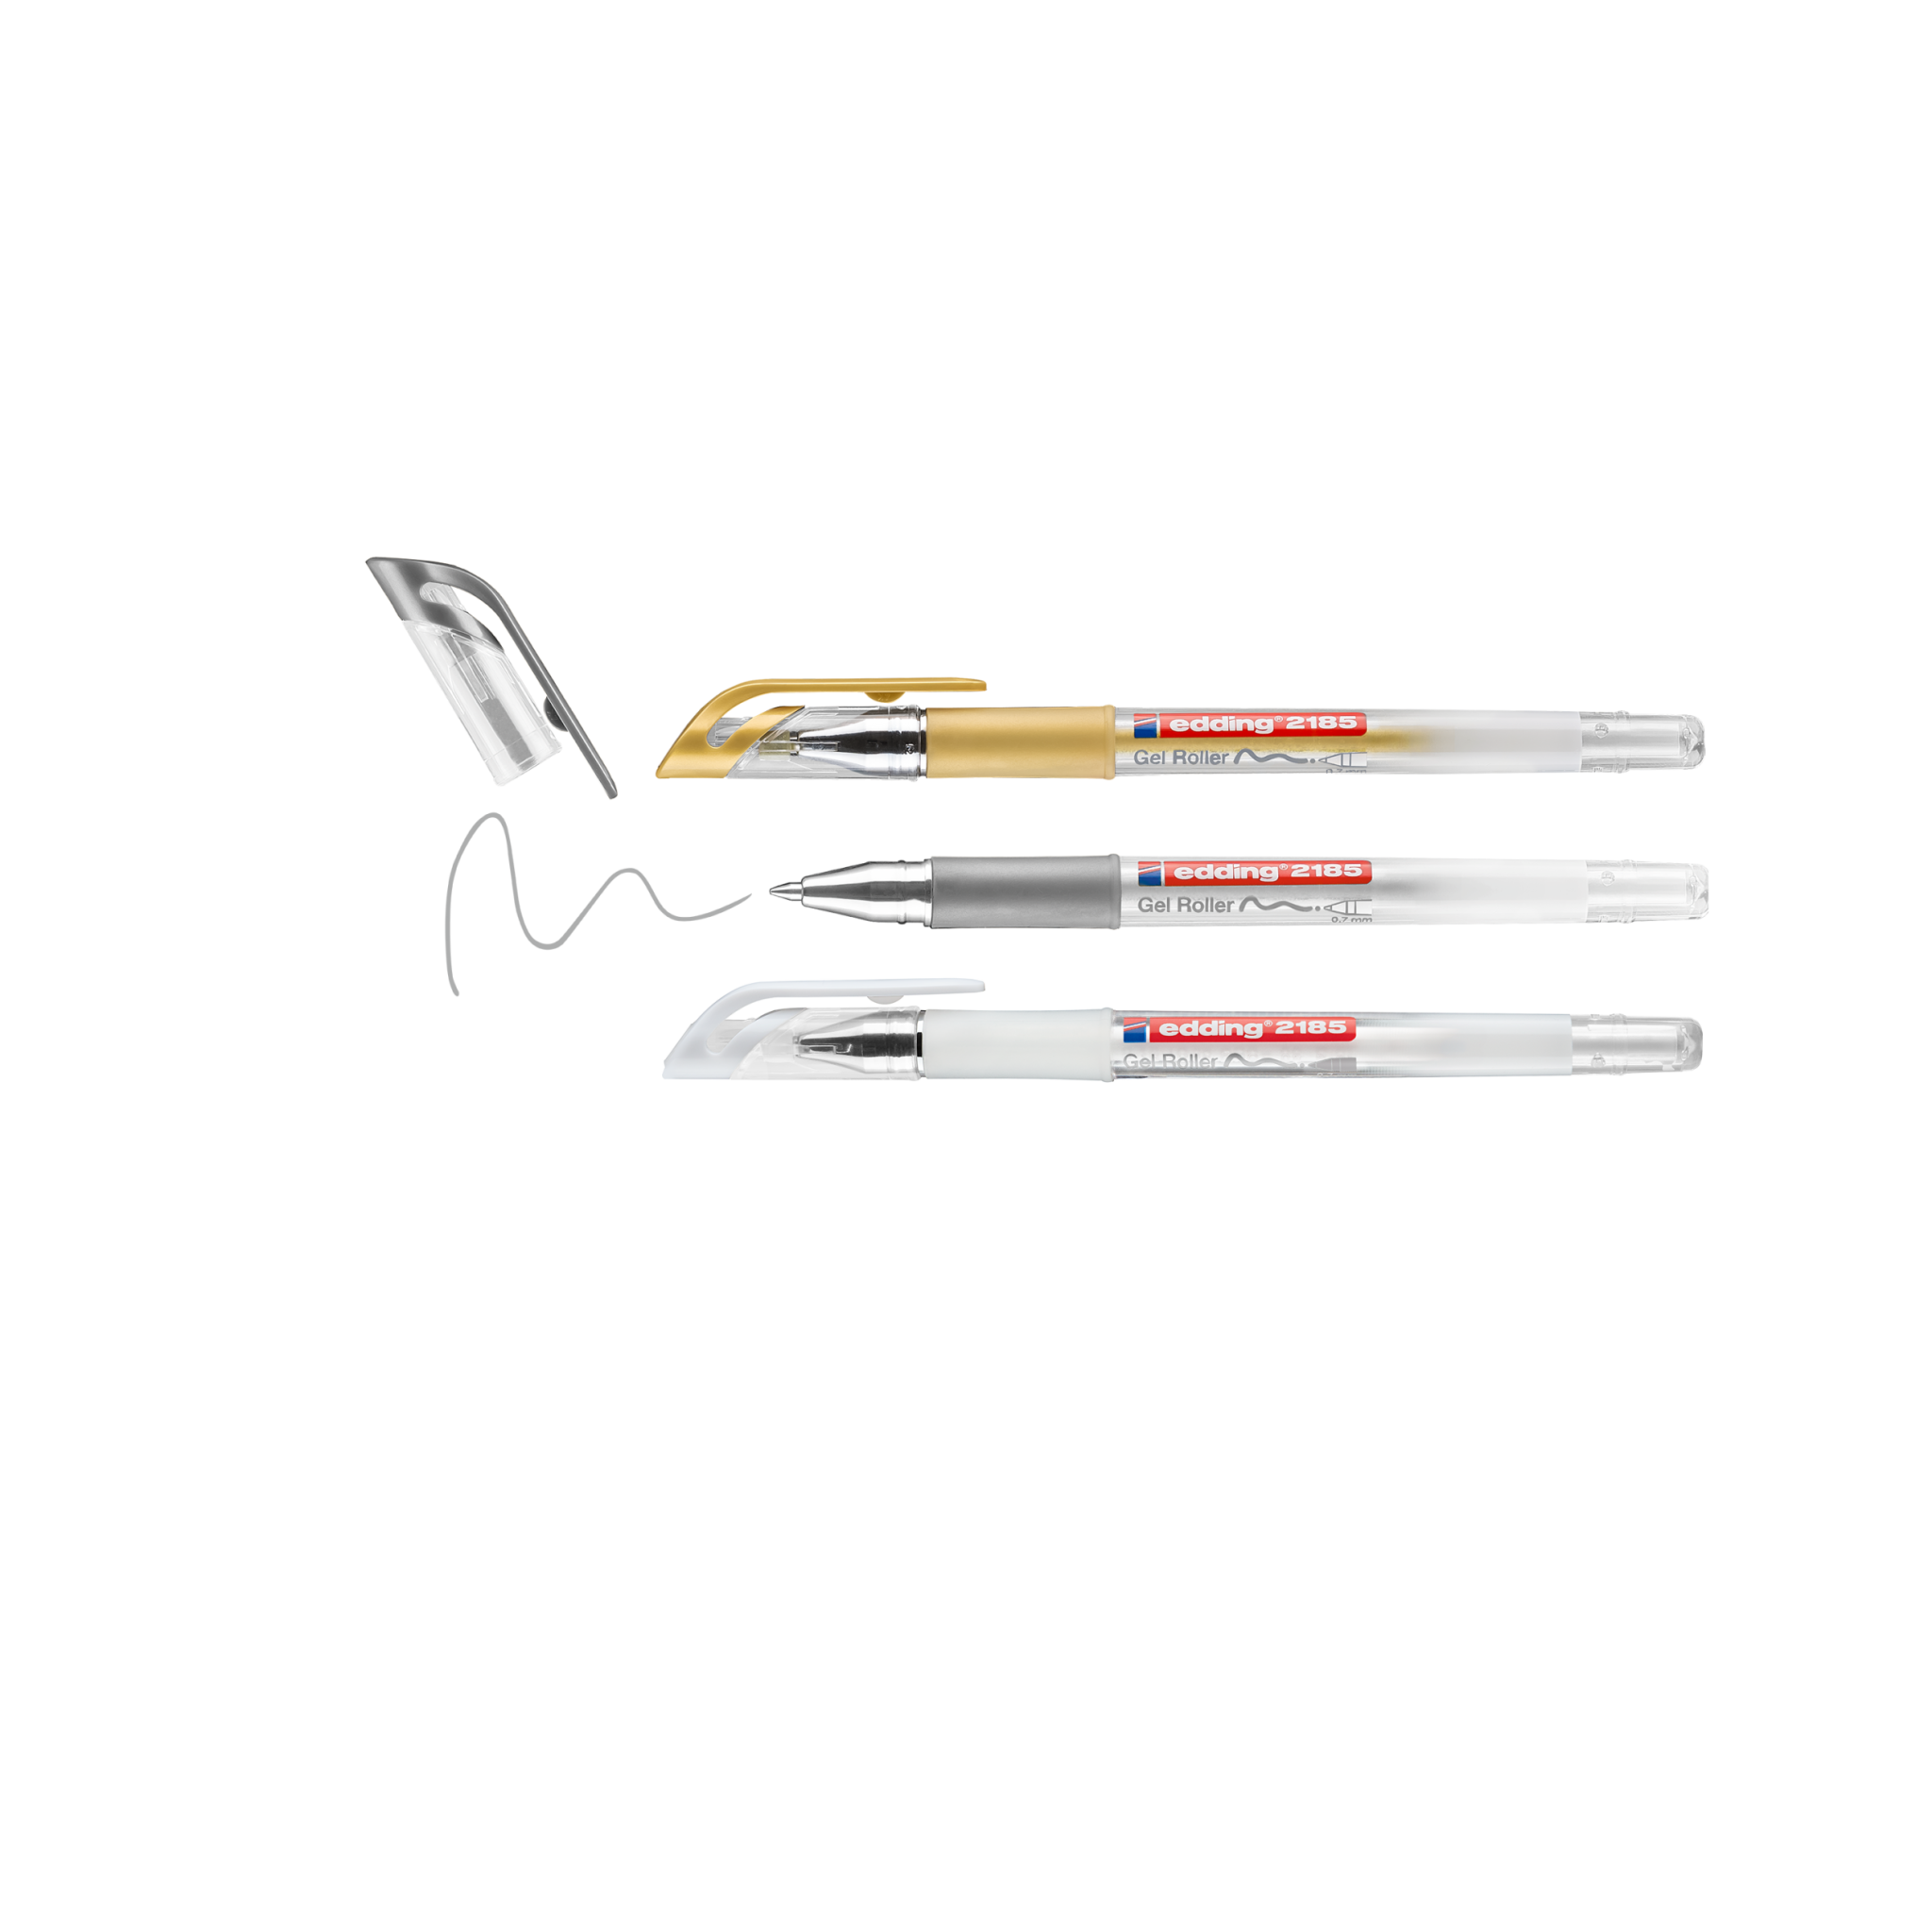 Eine digitale Komposition, die drei stilisierte edding 2185 Gelroller zeigt, die vor einem schwarzen Hintergrund schweben, mit kunstvollen Kringeln darunter, die an Kritzeleien oder Stiftspuren erinnern.